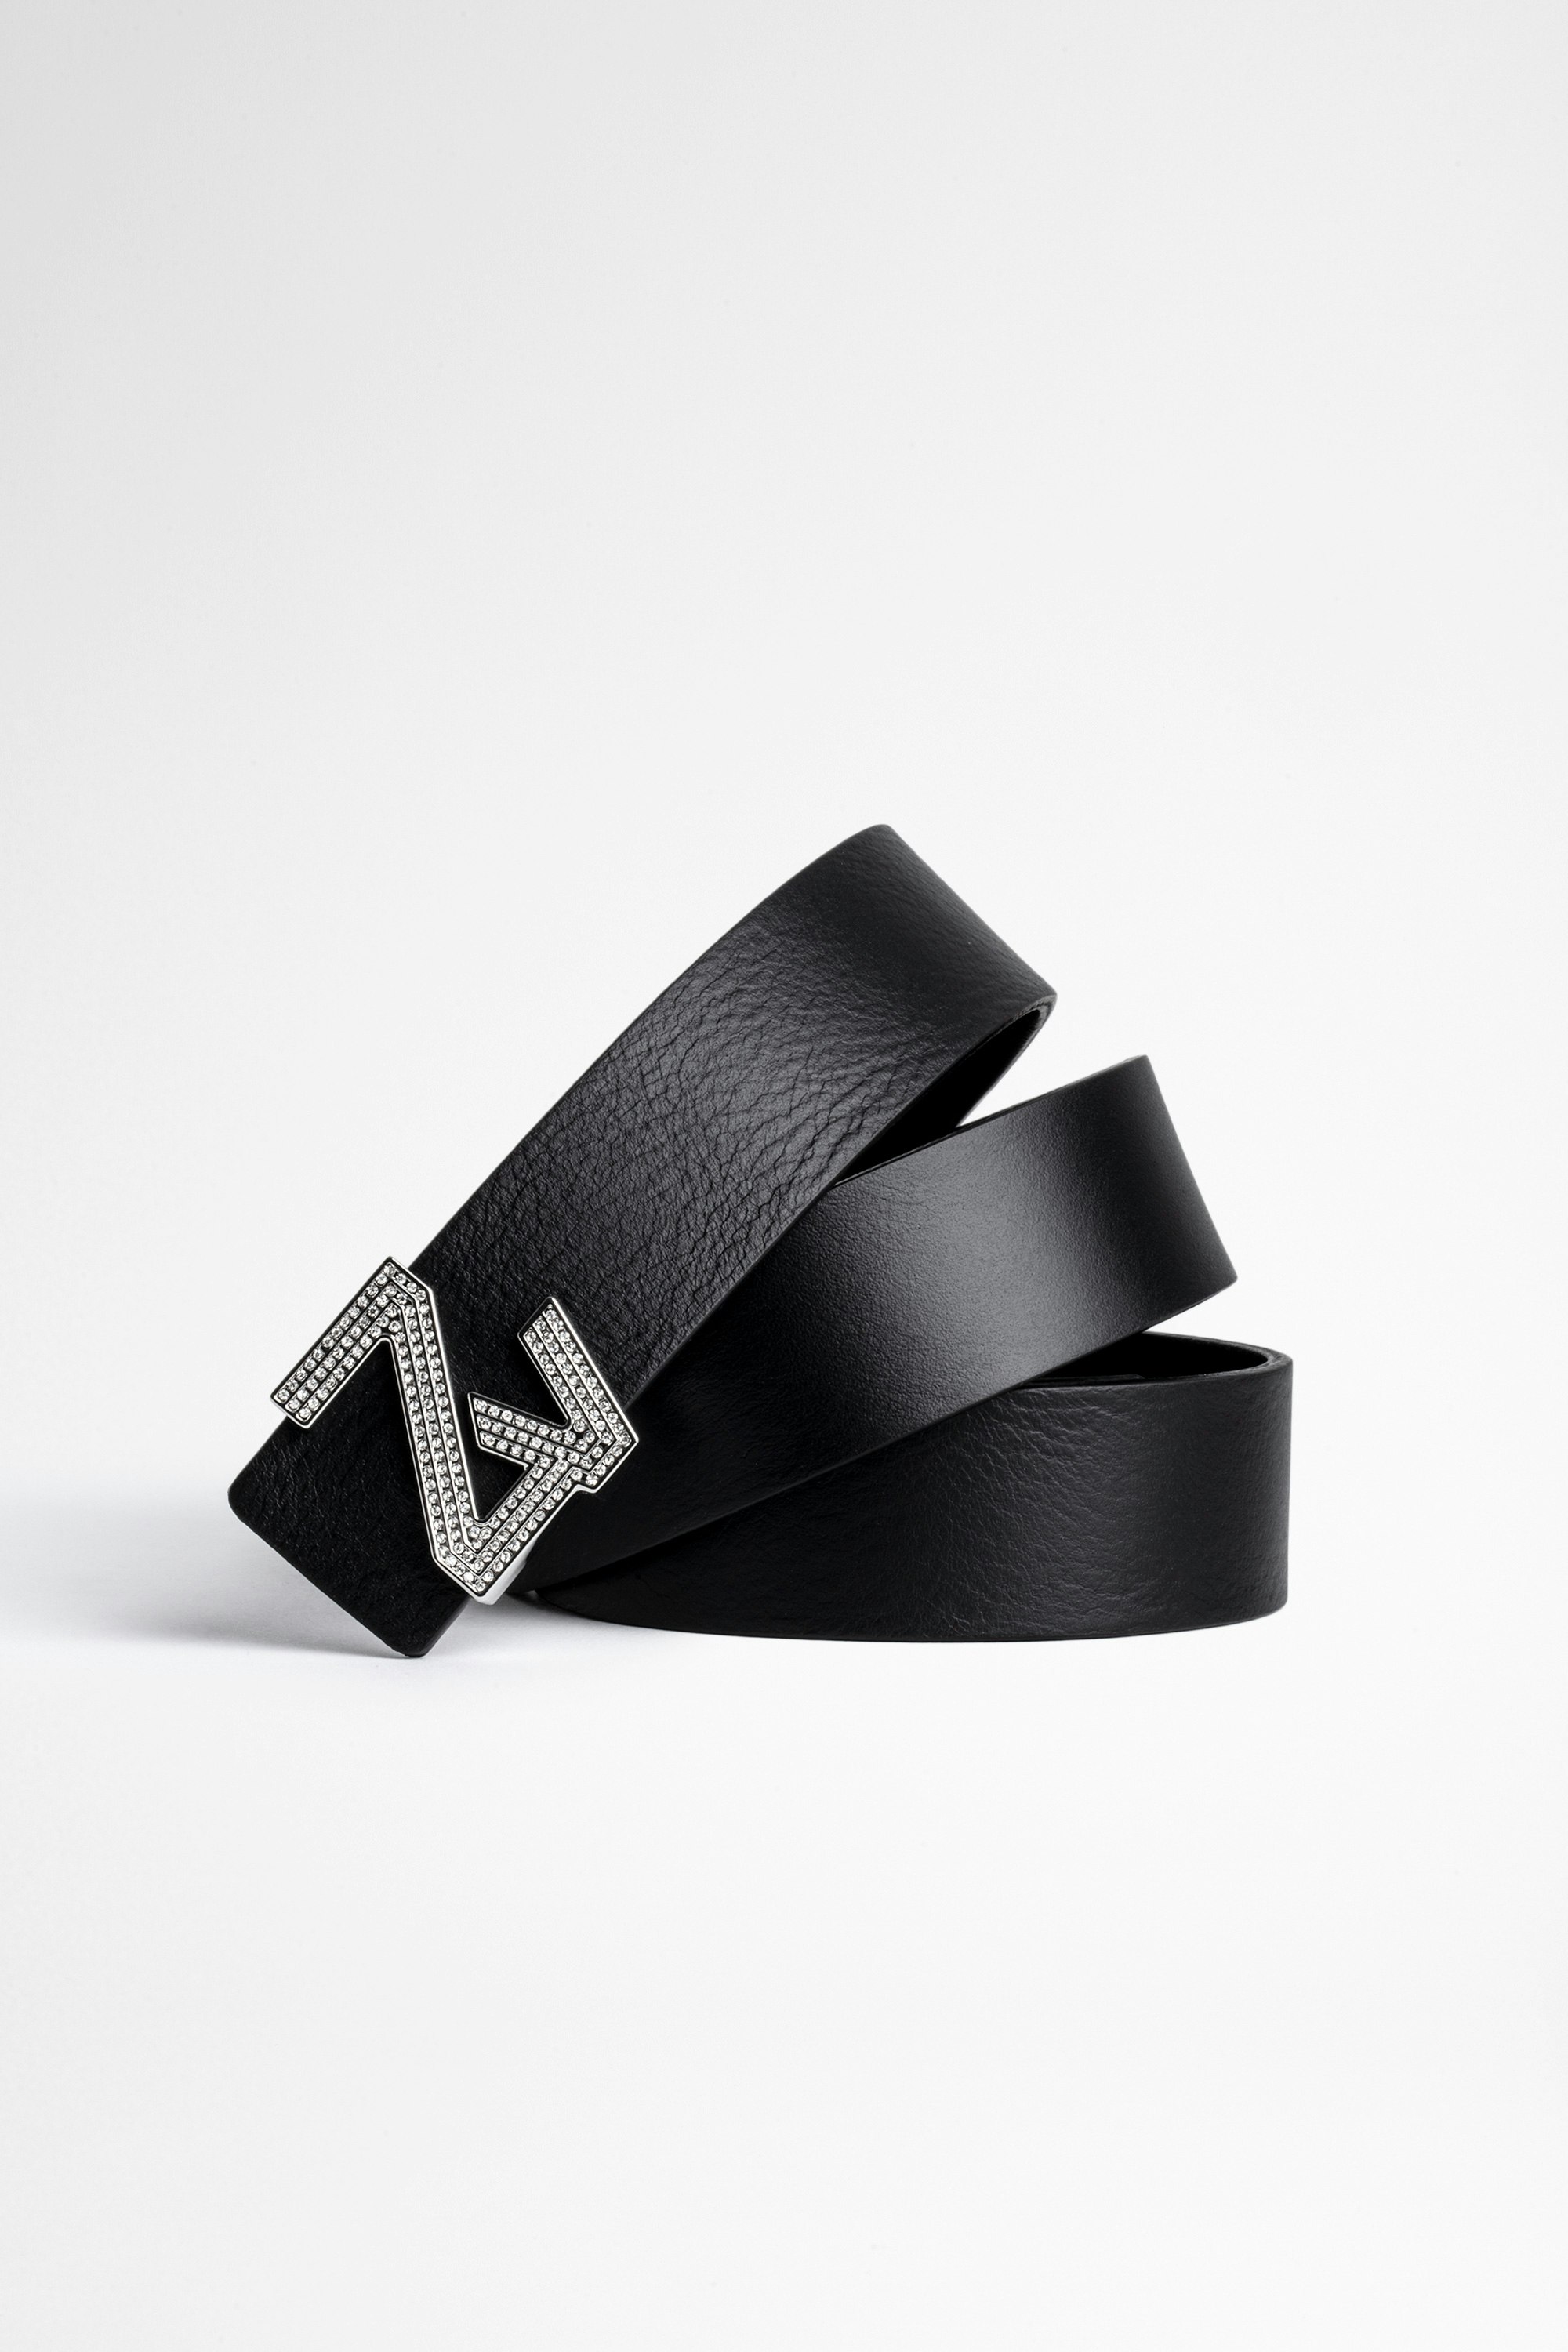 Cinturón ZV Initiale Cristales La Mini Belt Cinturón negro de piel de mujer con hebilla ZV Initiale adornada con cristales